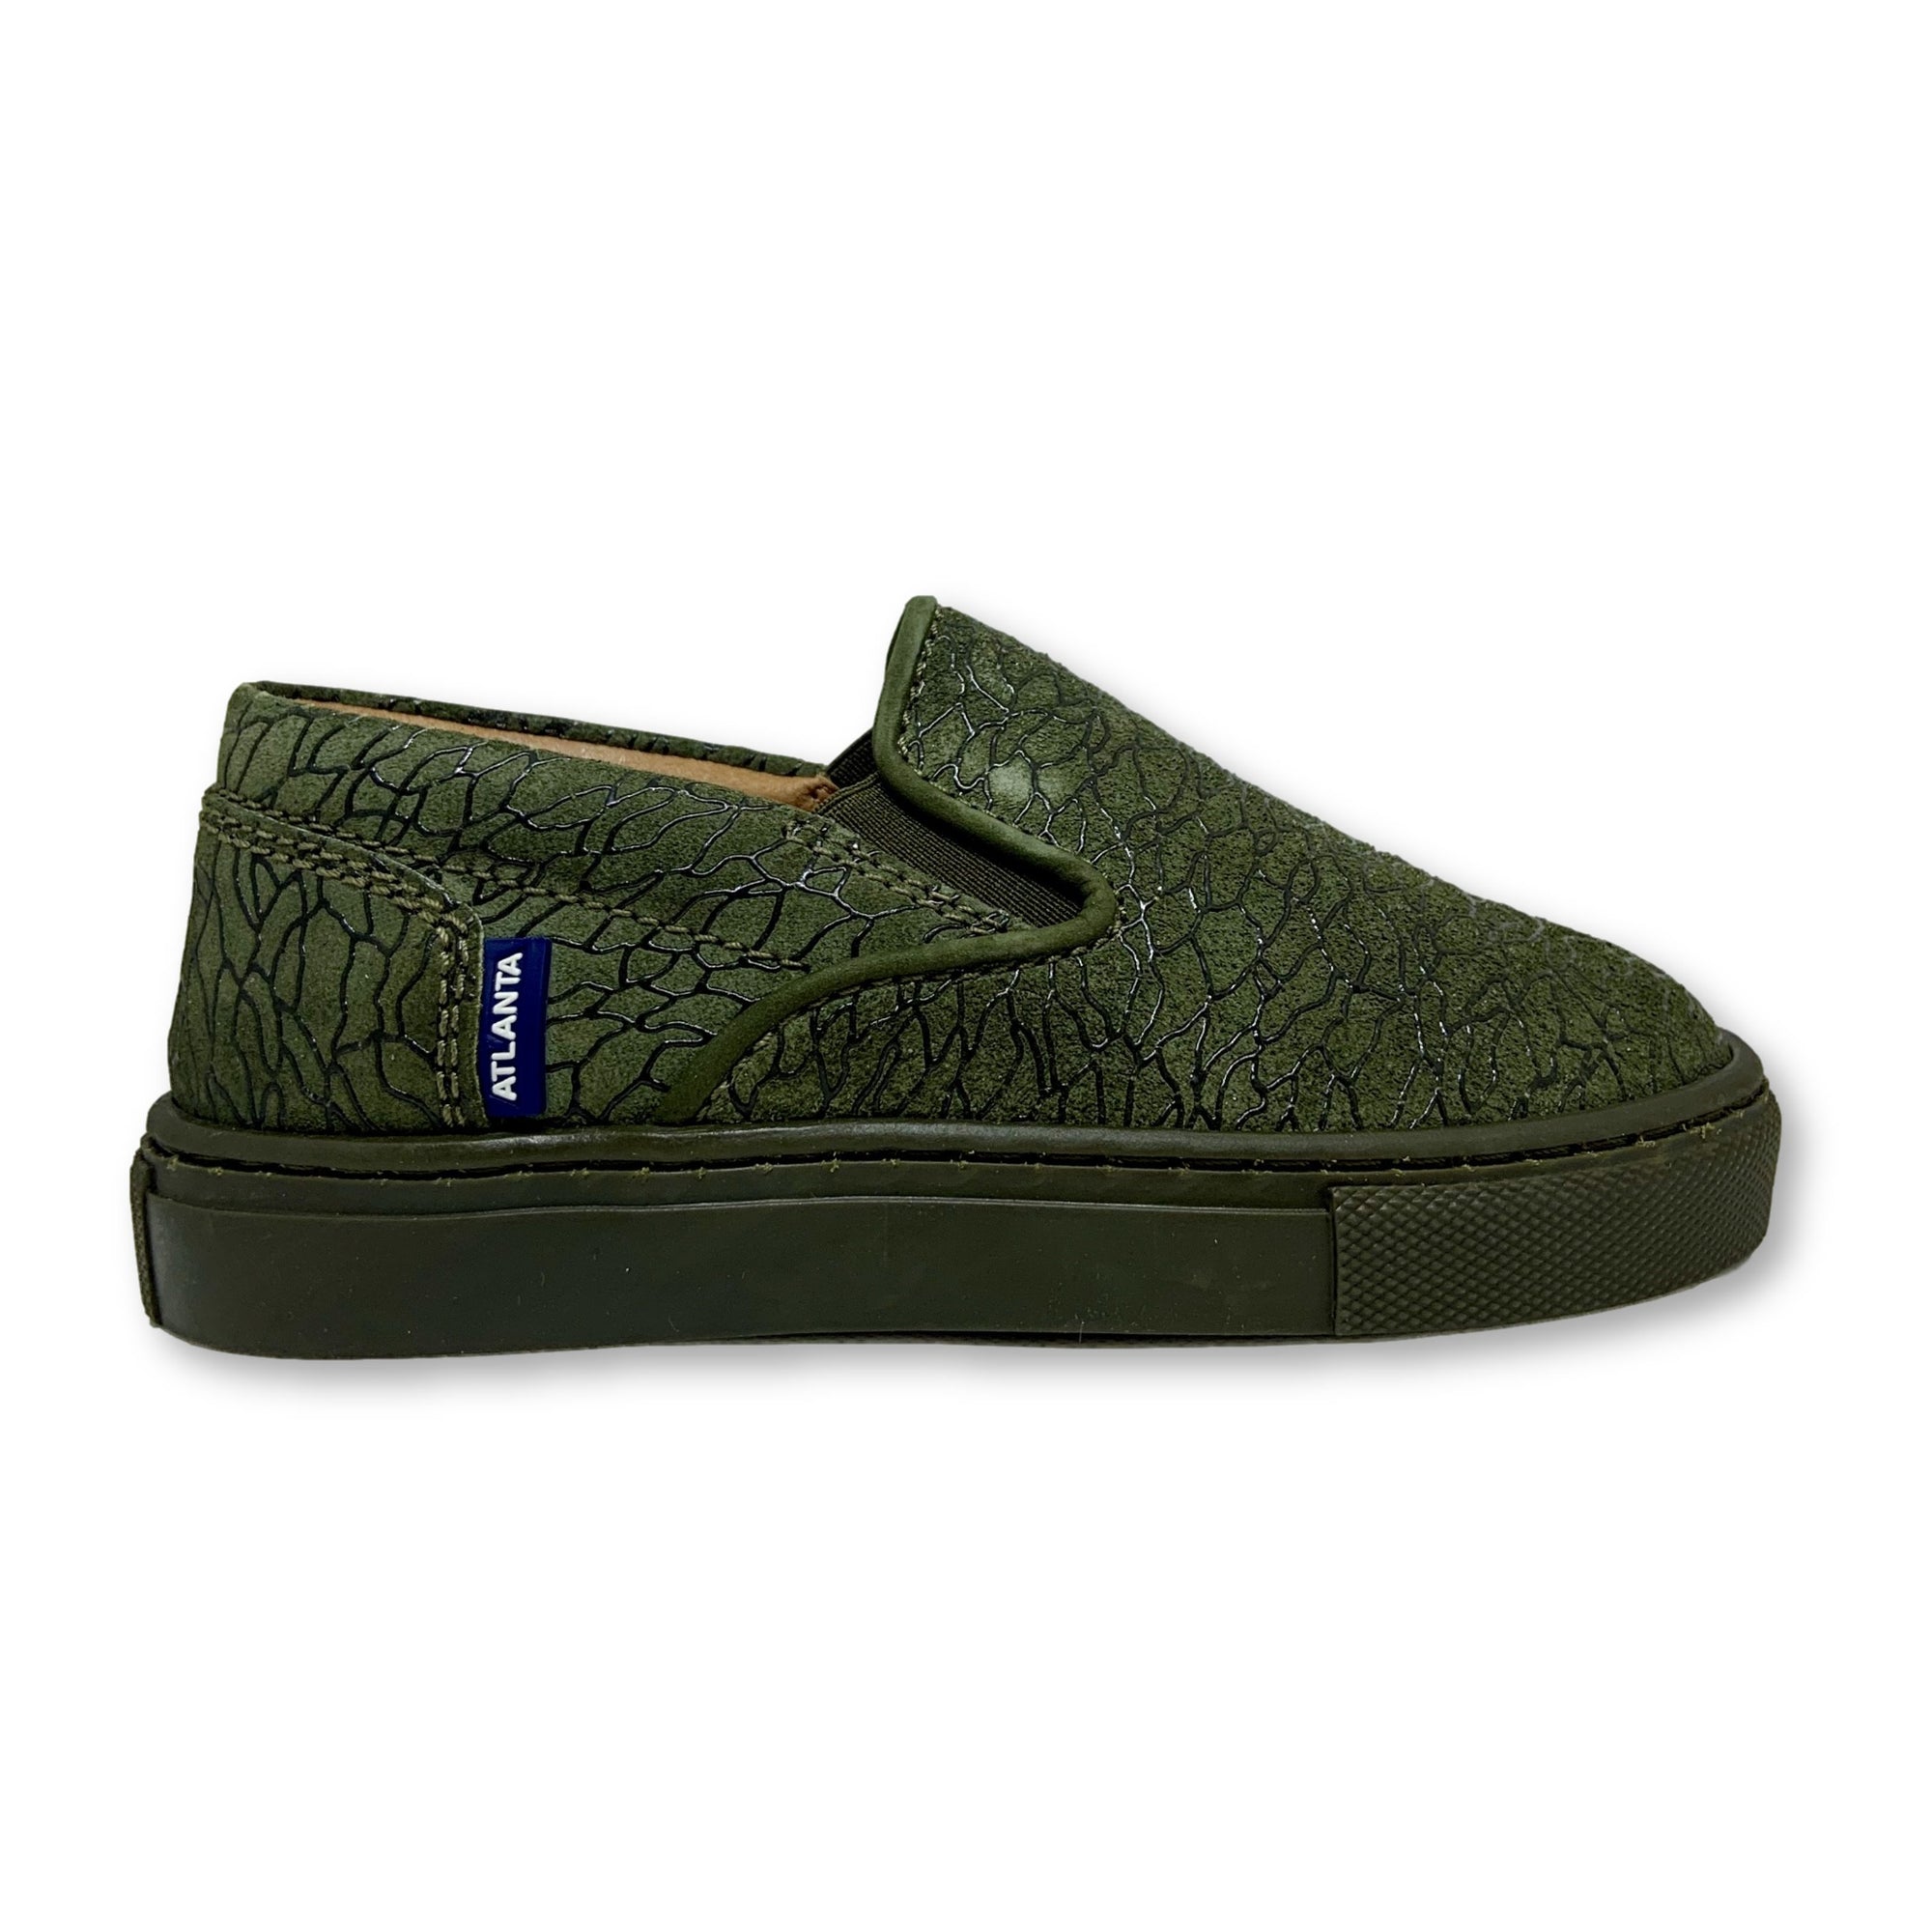 Atlanta Mocassin Hunter Green Textured Slip-on Sneaker-Tassel Children Shoes